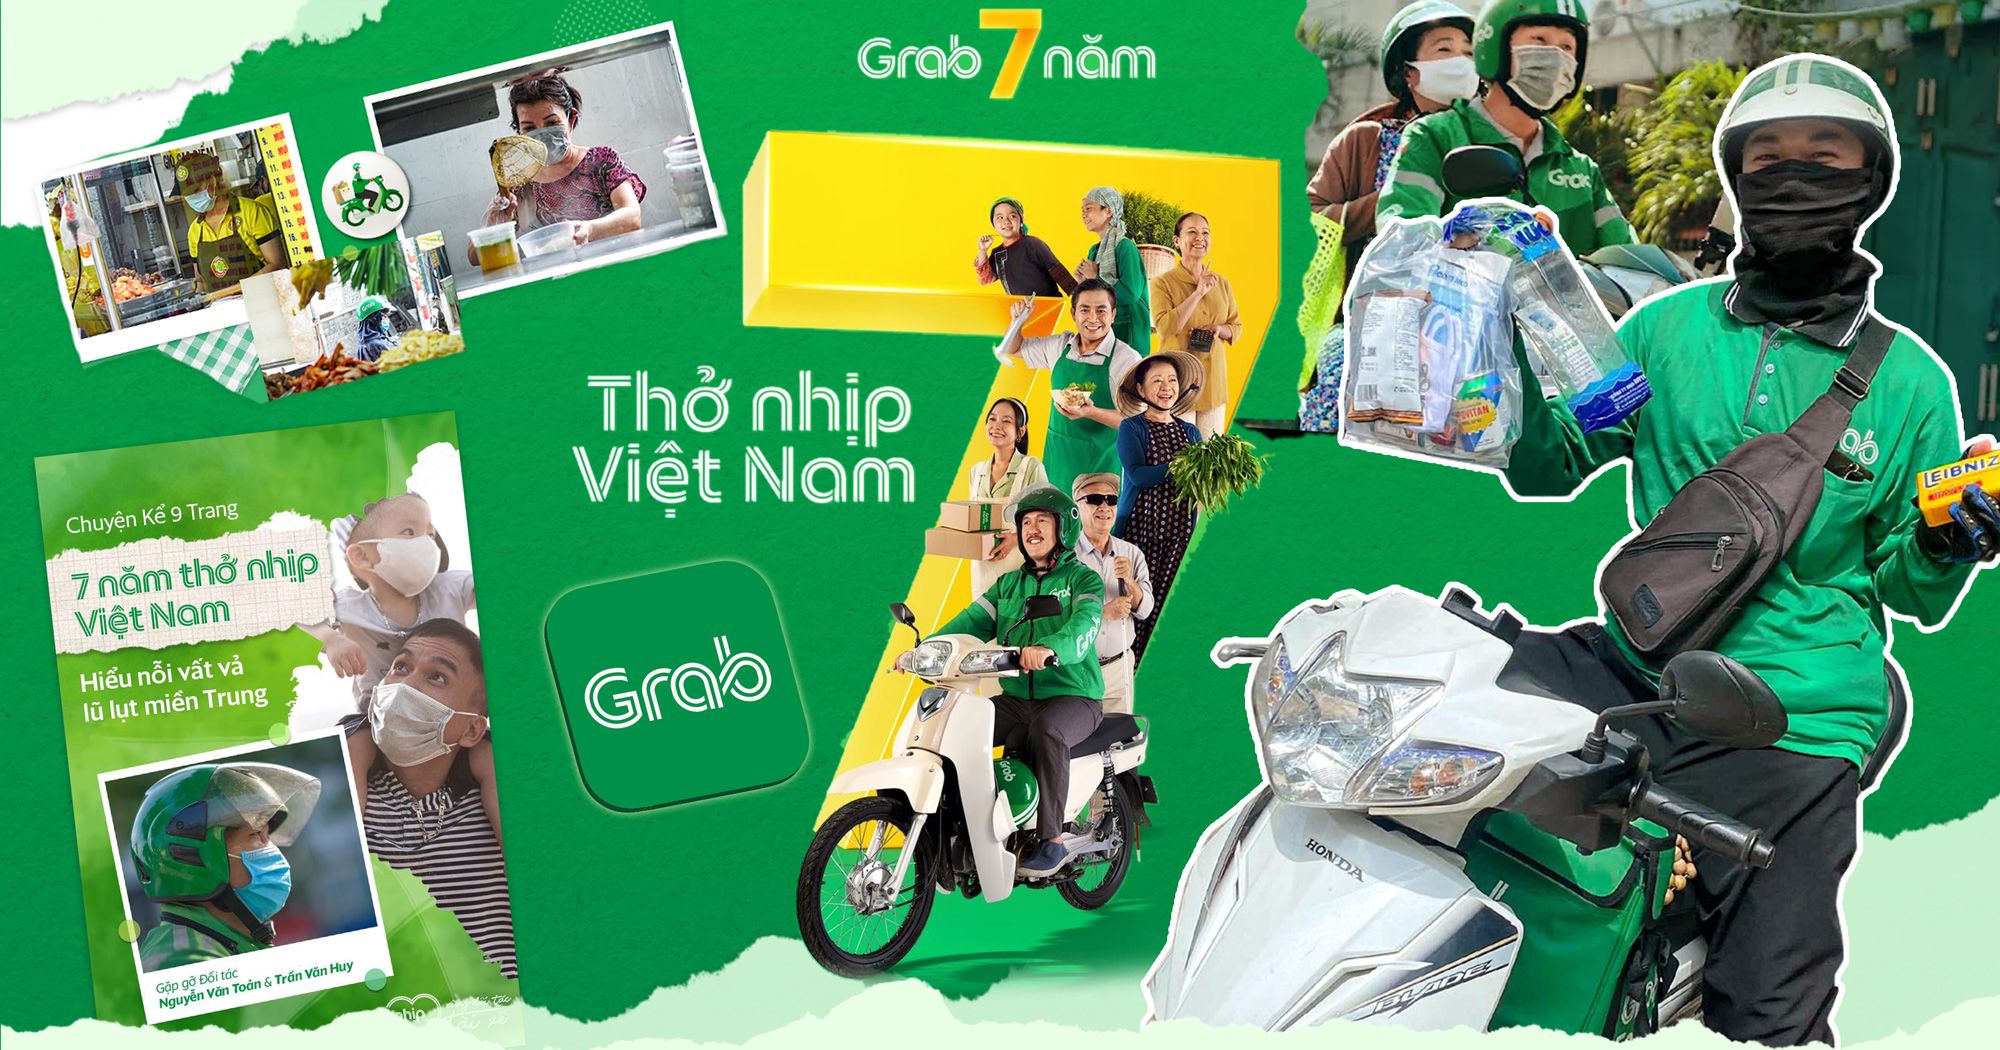 Grab 7 năm “Thở nhịp Việt Nam” - Hành trình xây dựng siêu ứng dụng từ những điều bình dị 